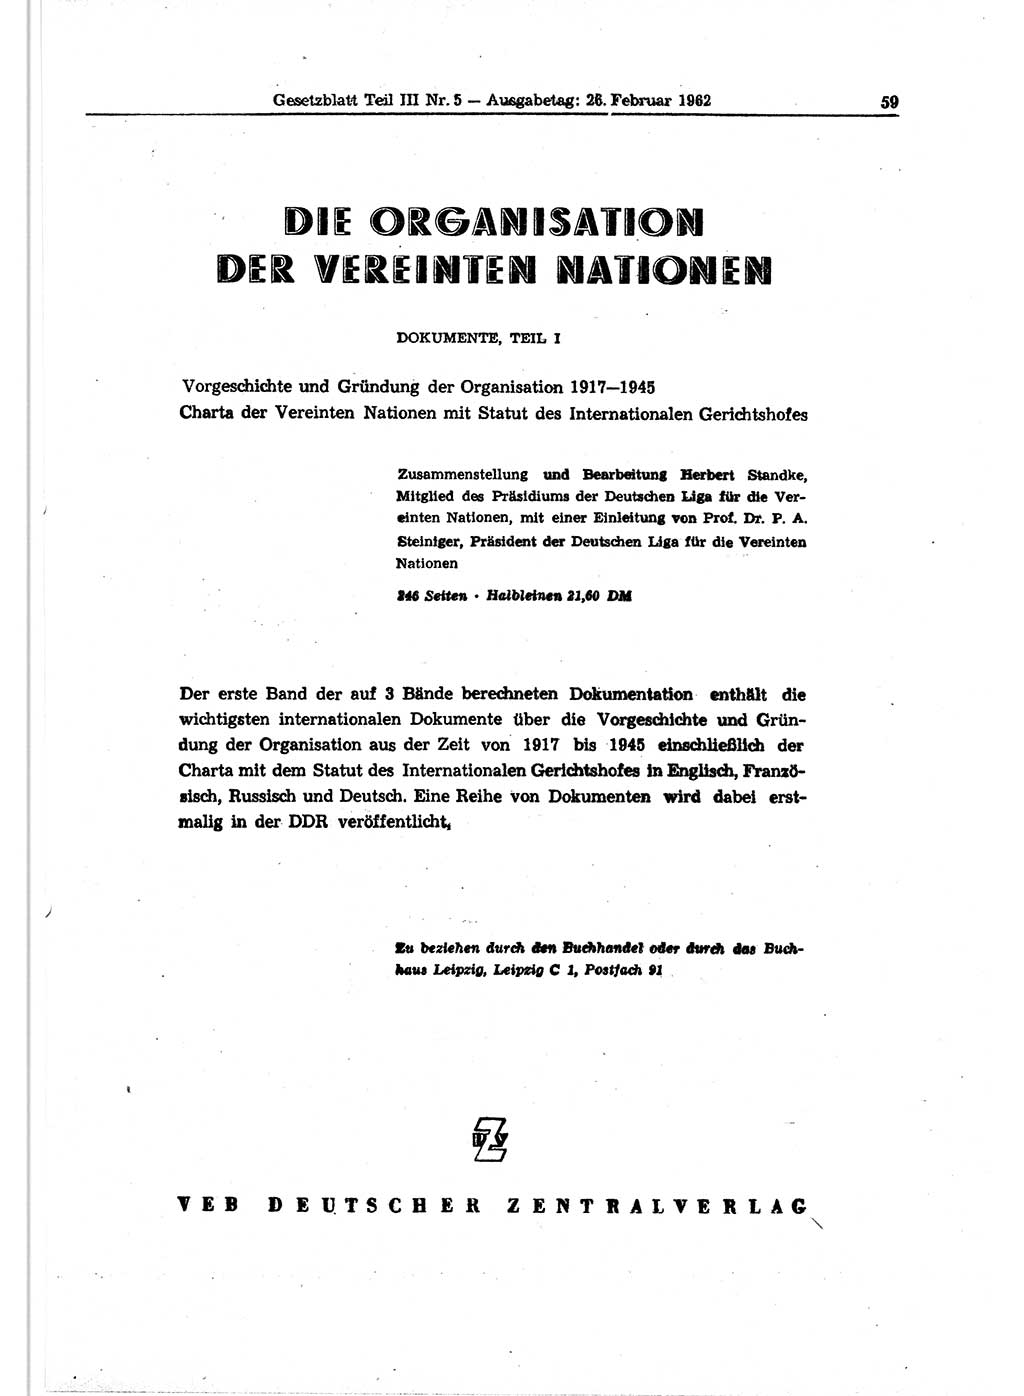 Gesetzblatt (GBl.) der Deutschen Demokratischen Republik (DDR) Teil ⅠⅠⅠ 1962, Seite 59 (GBl. DDR ⅠⅠⅠ 1962, S. 59)